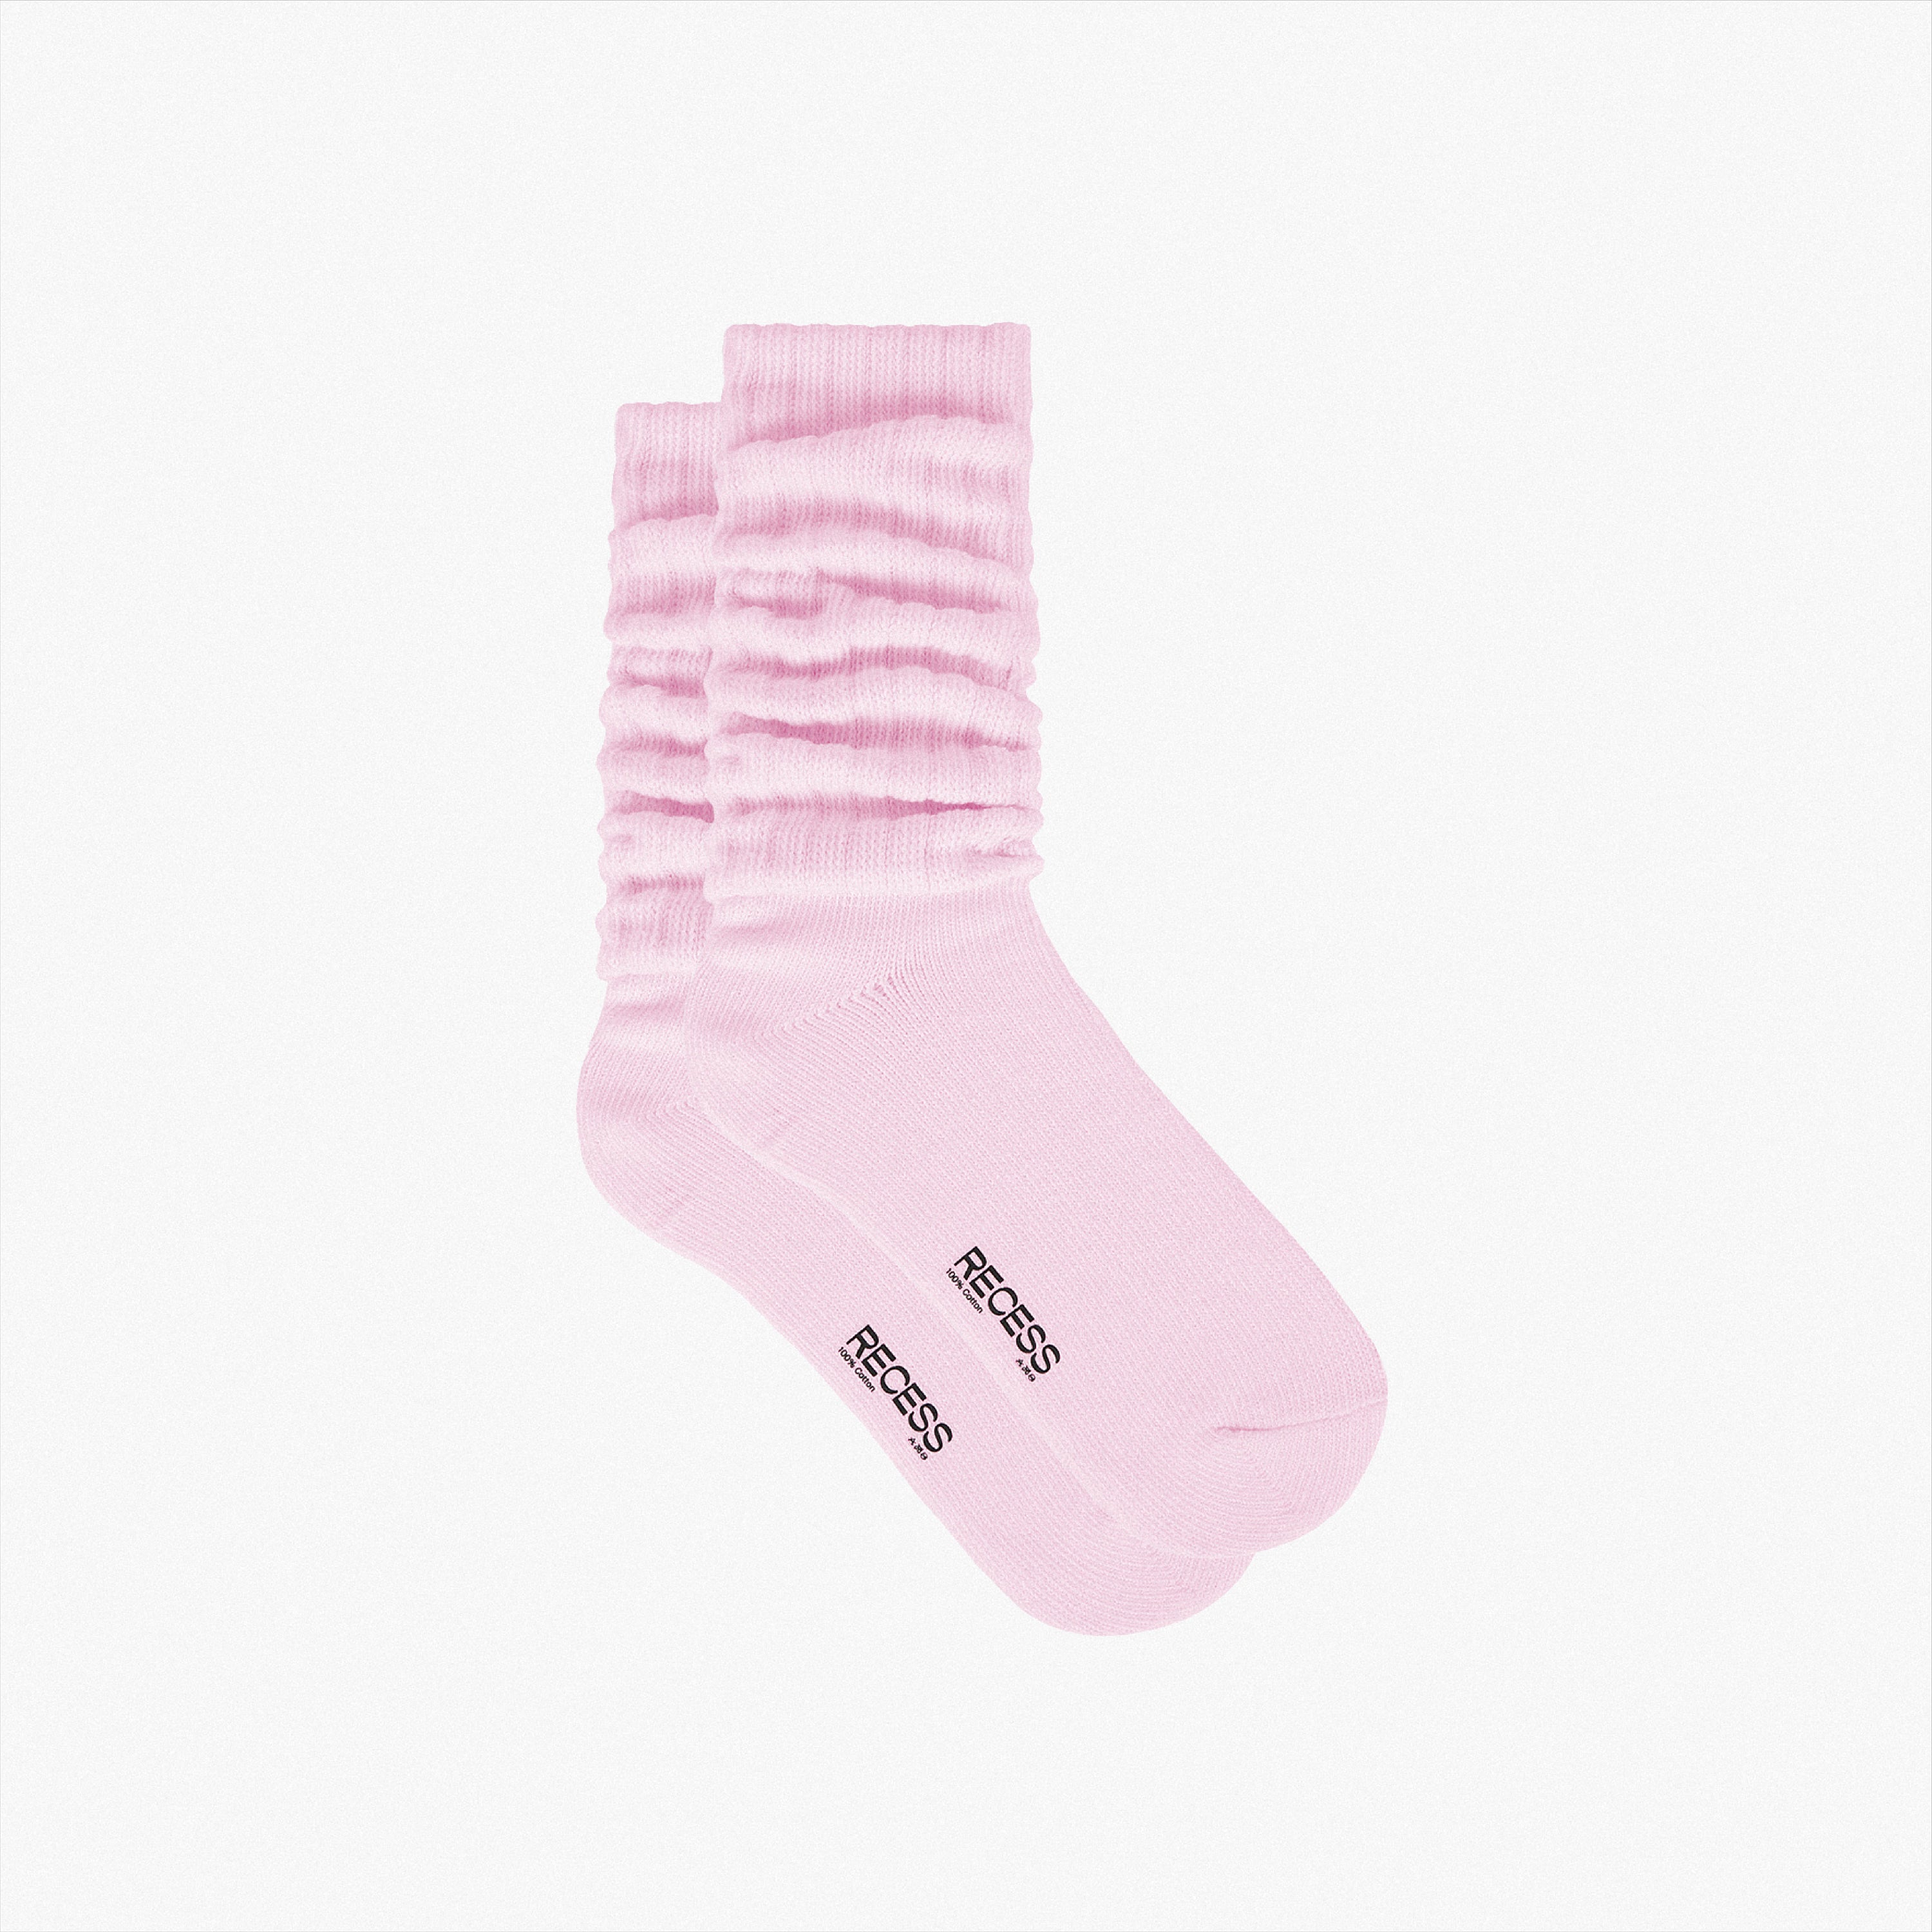 socks – Recess